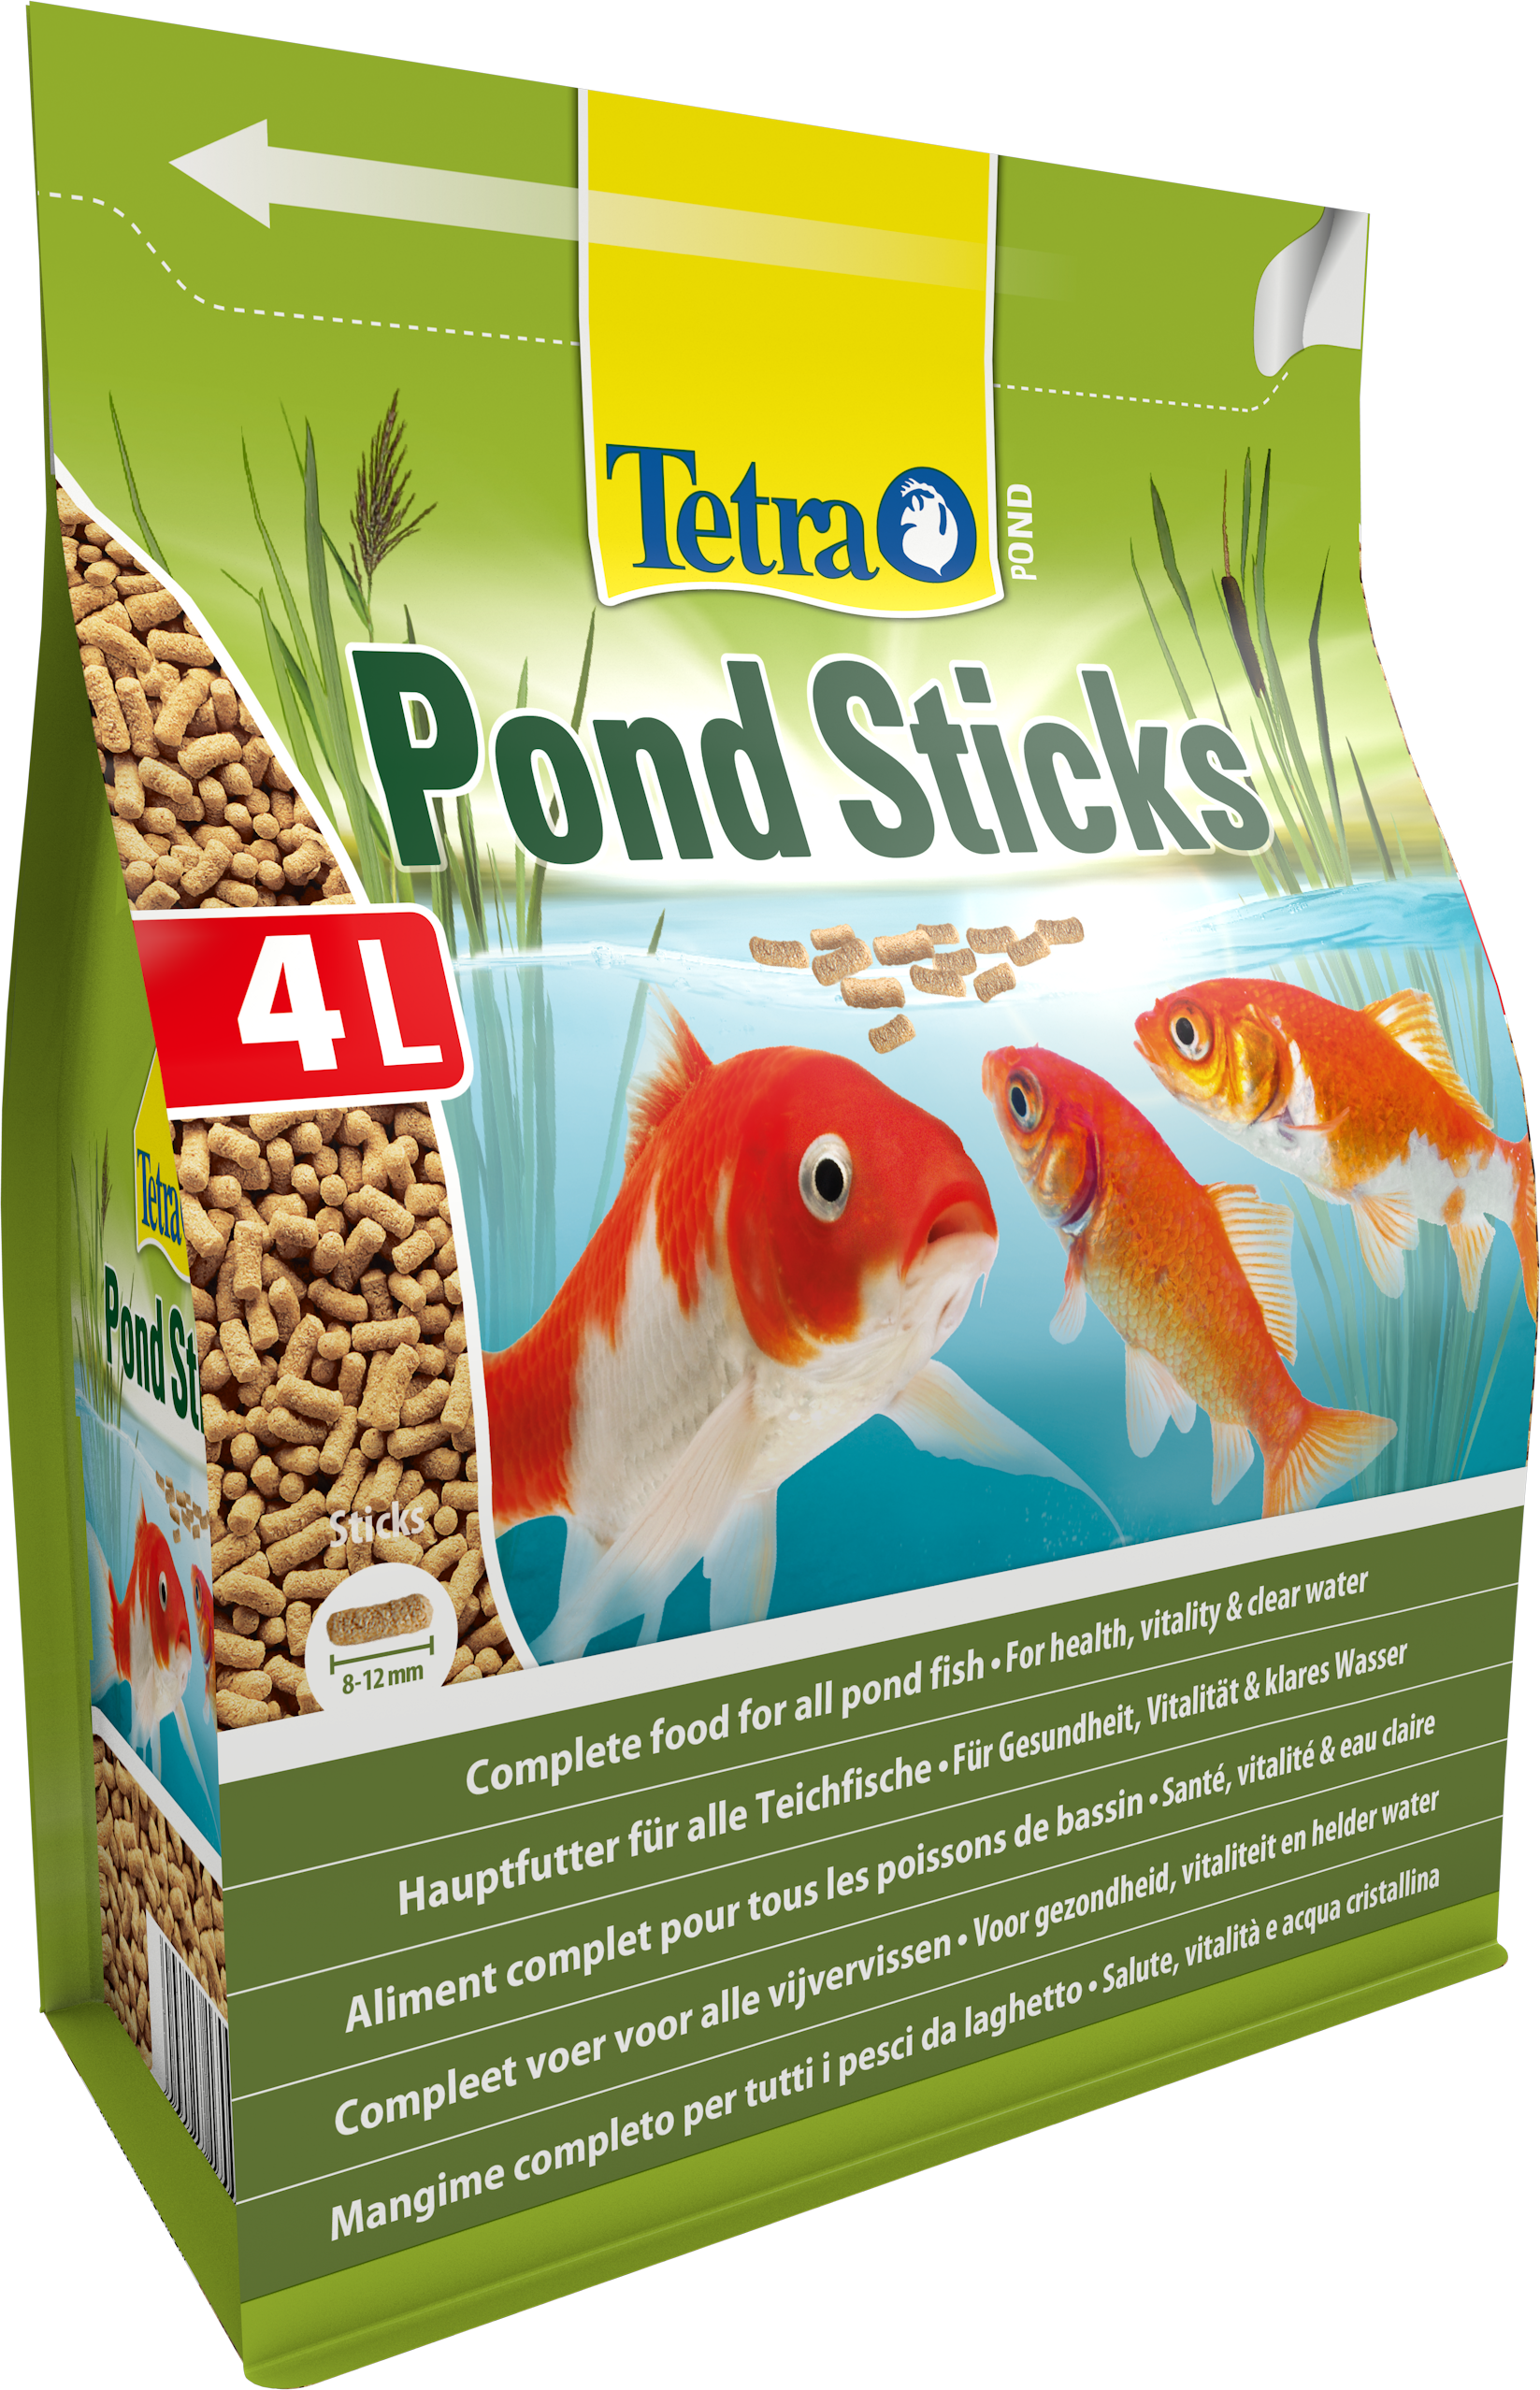 Tetra Pond sticks TETRA - 4L